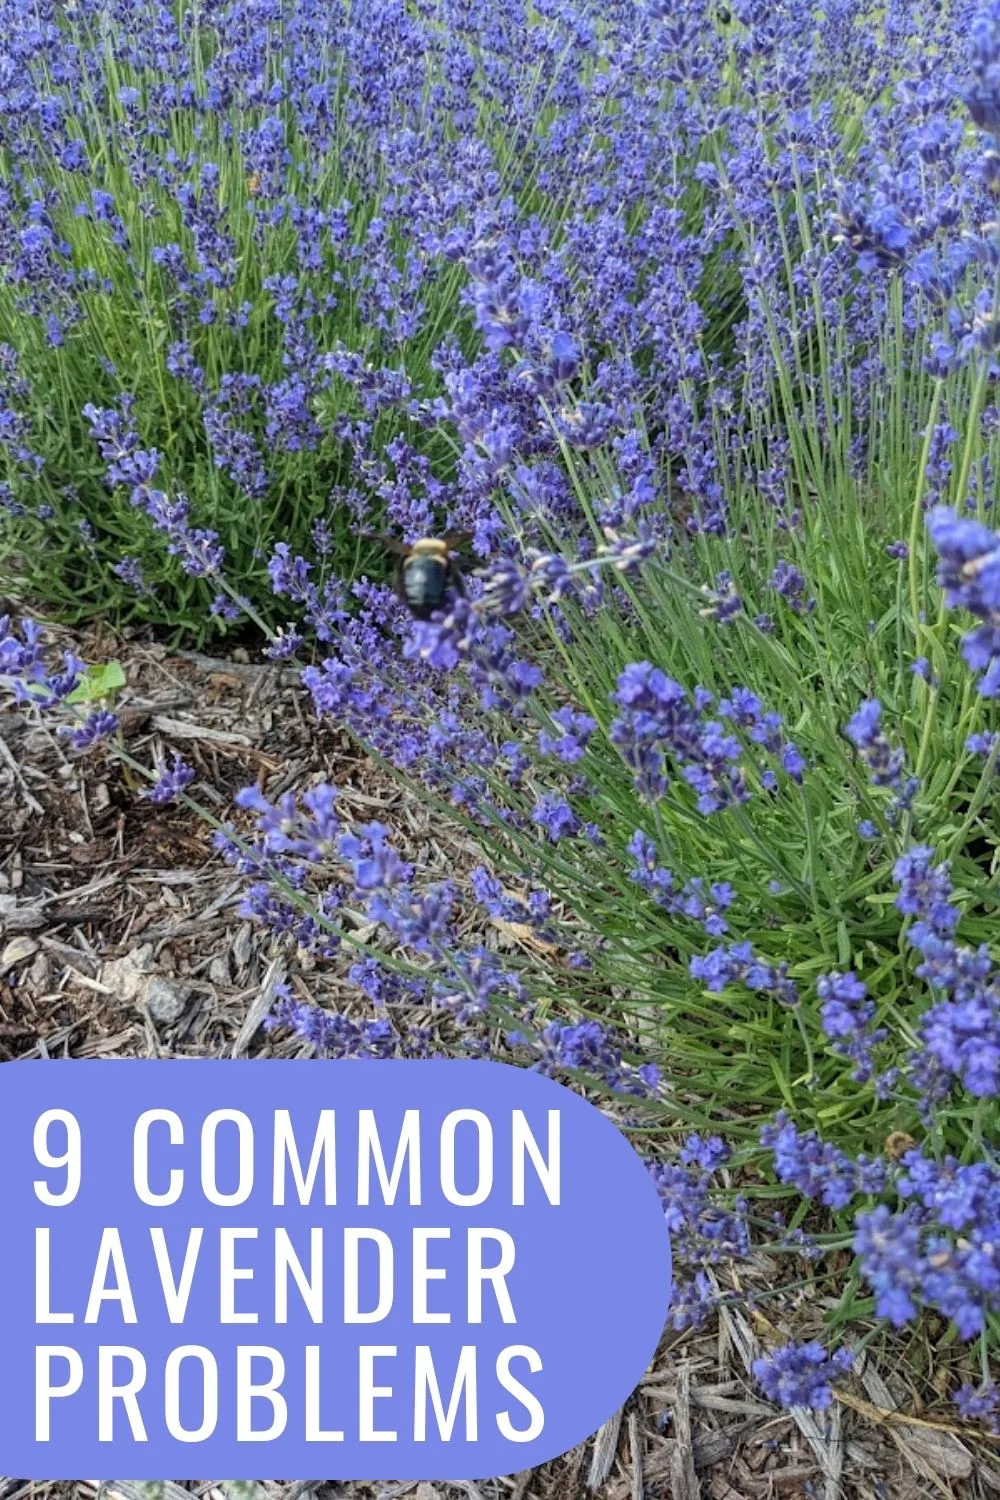 9 common lavender problems.